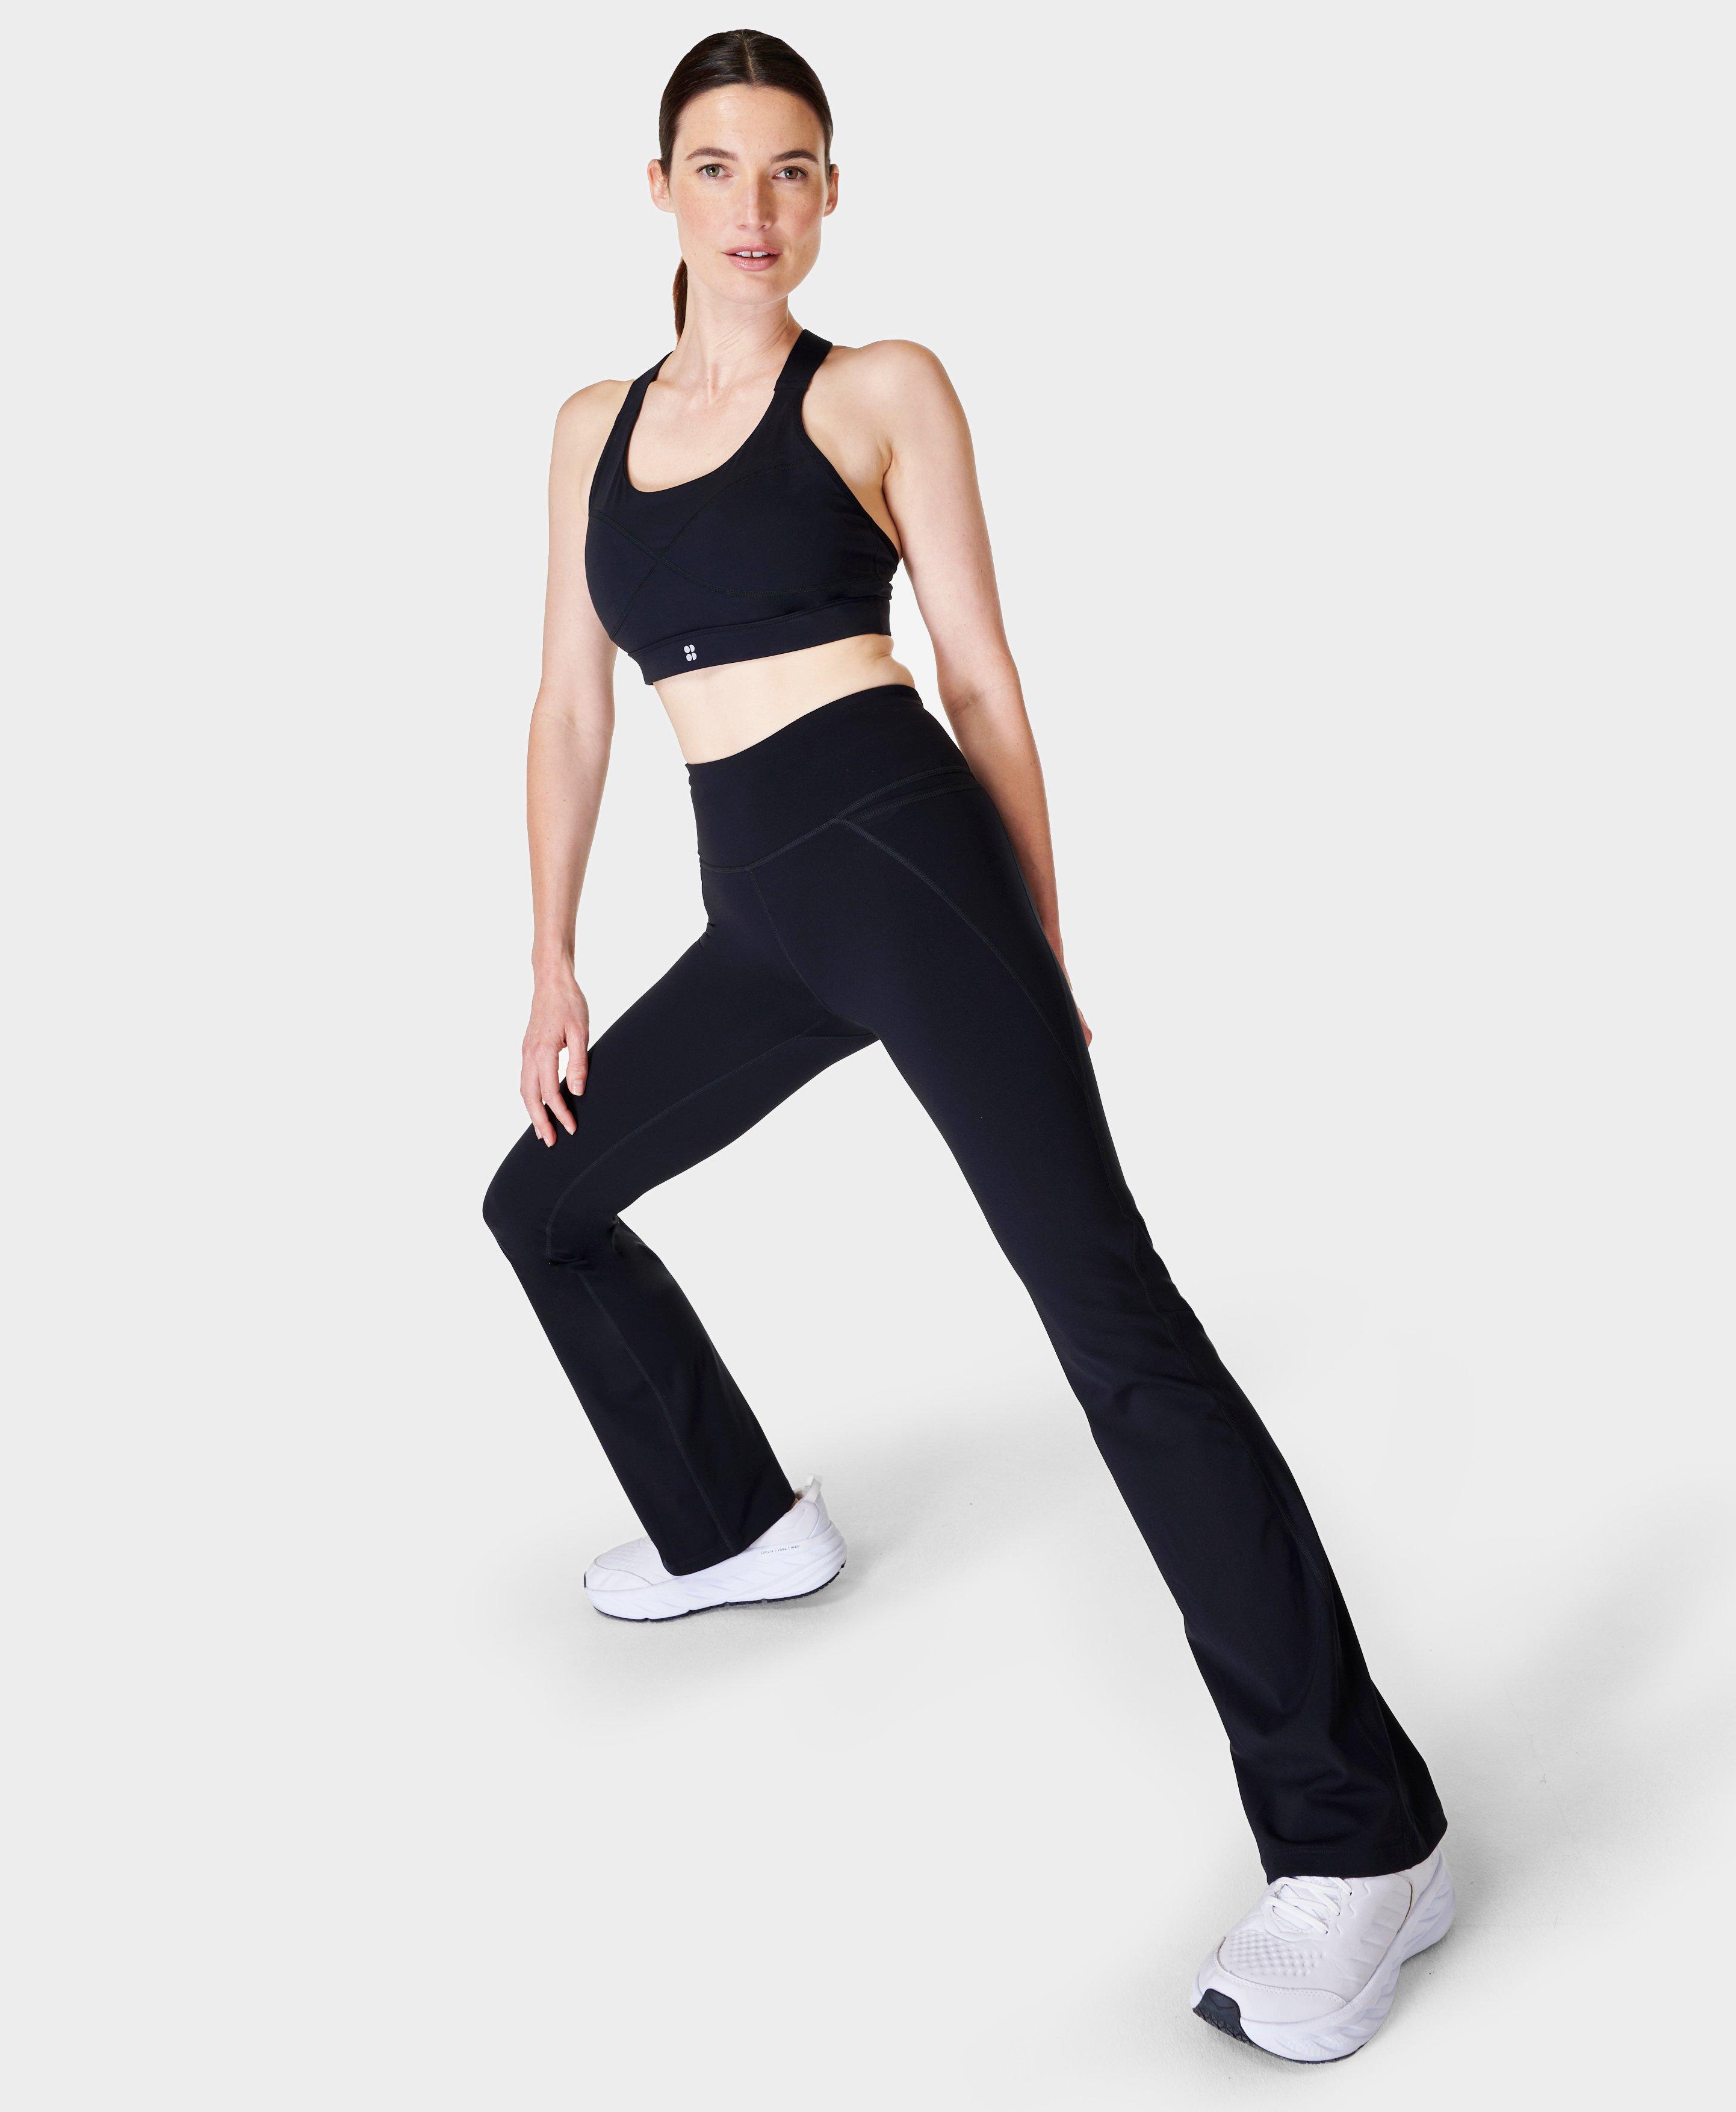 Power Bootcut Workout Pants - Black, Women's Trousers & Yoga Pants